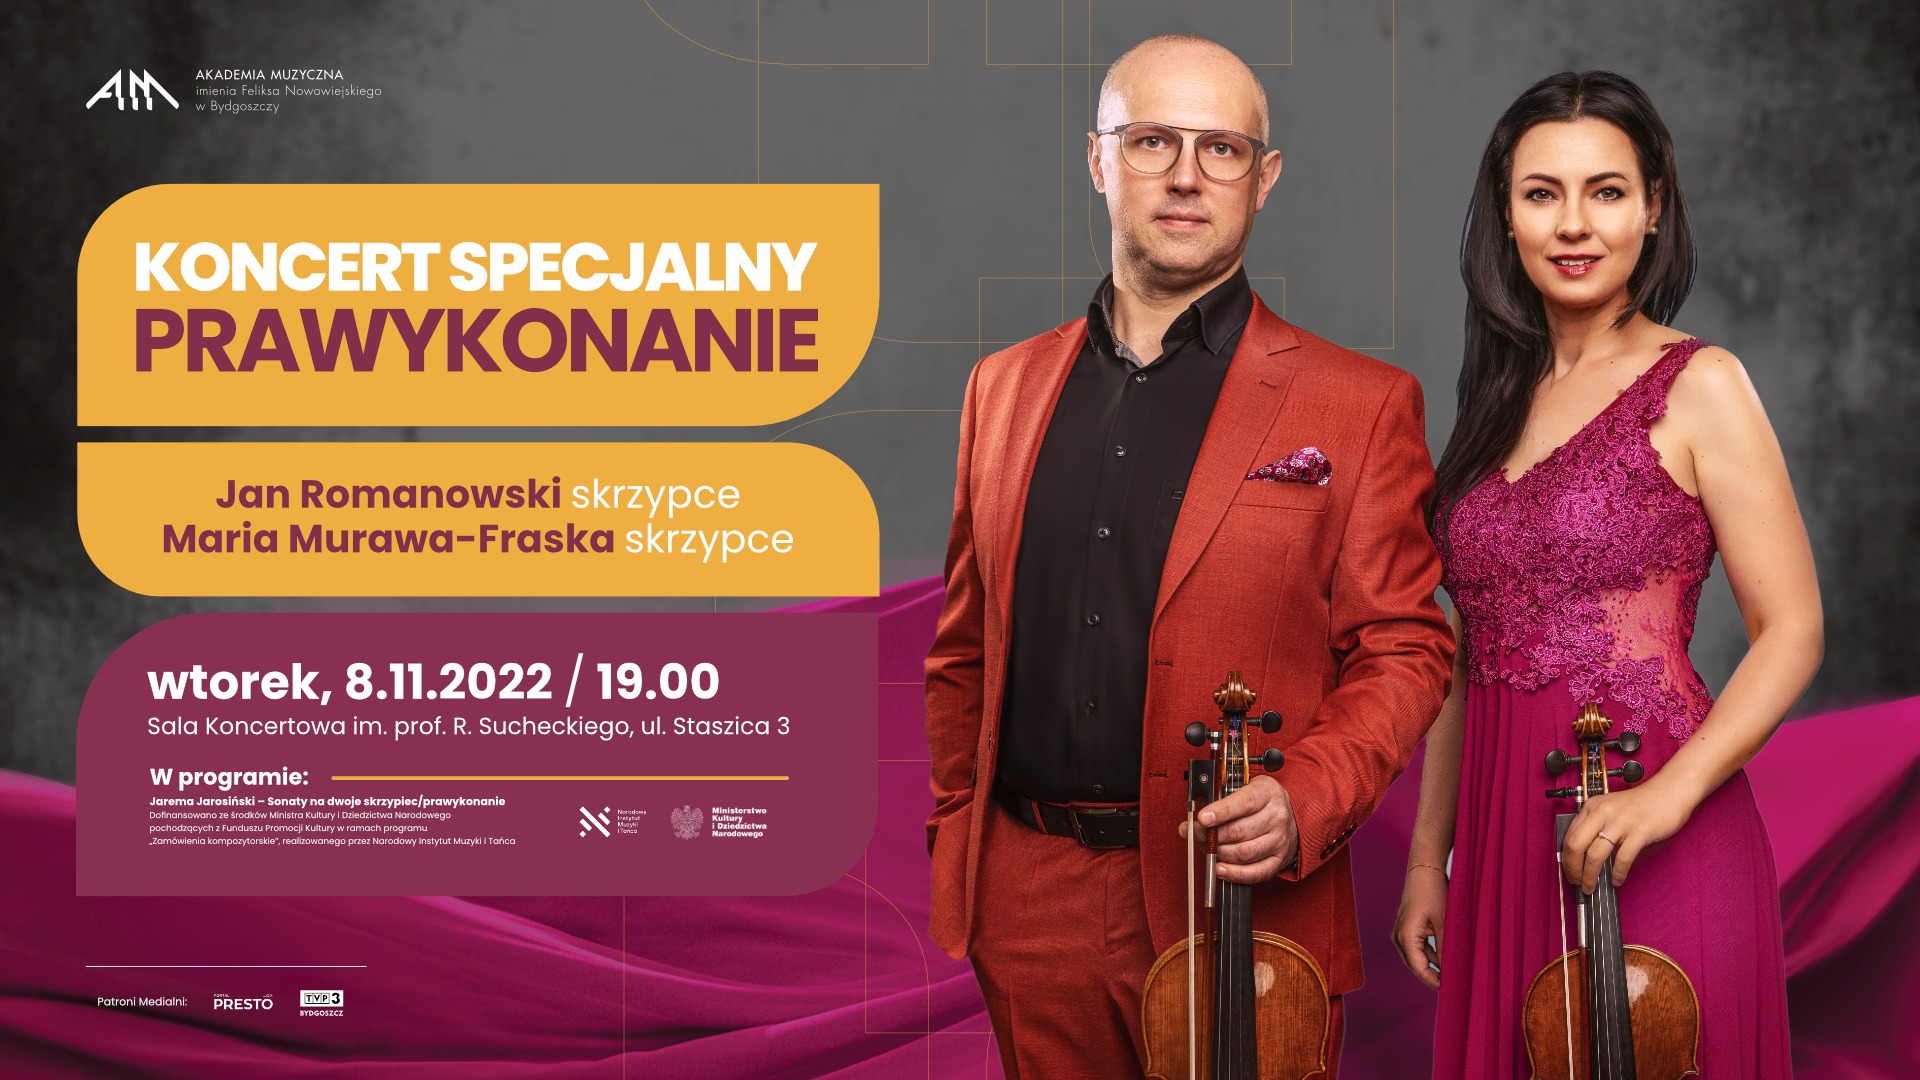 Jarema Jarosiński - Sonaty na dwoje skrzypiec / prawykonanie (Jan Romanowski, Maria Murawa-Fraska)